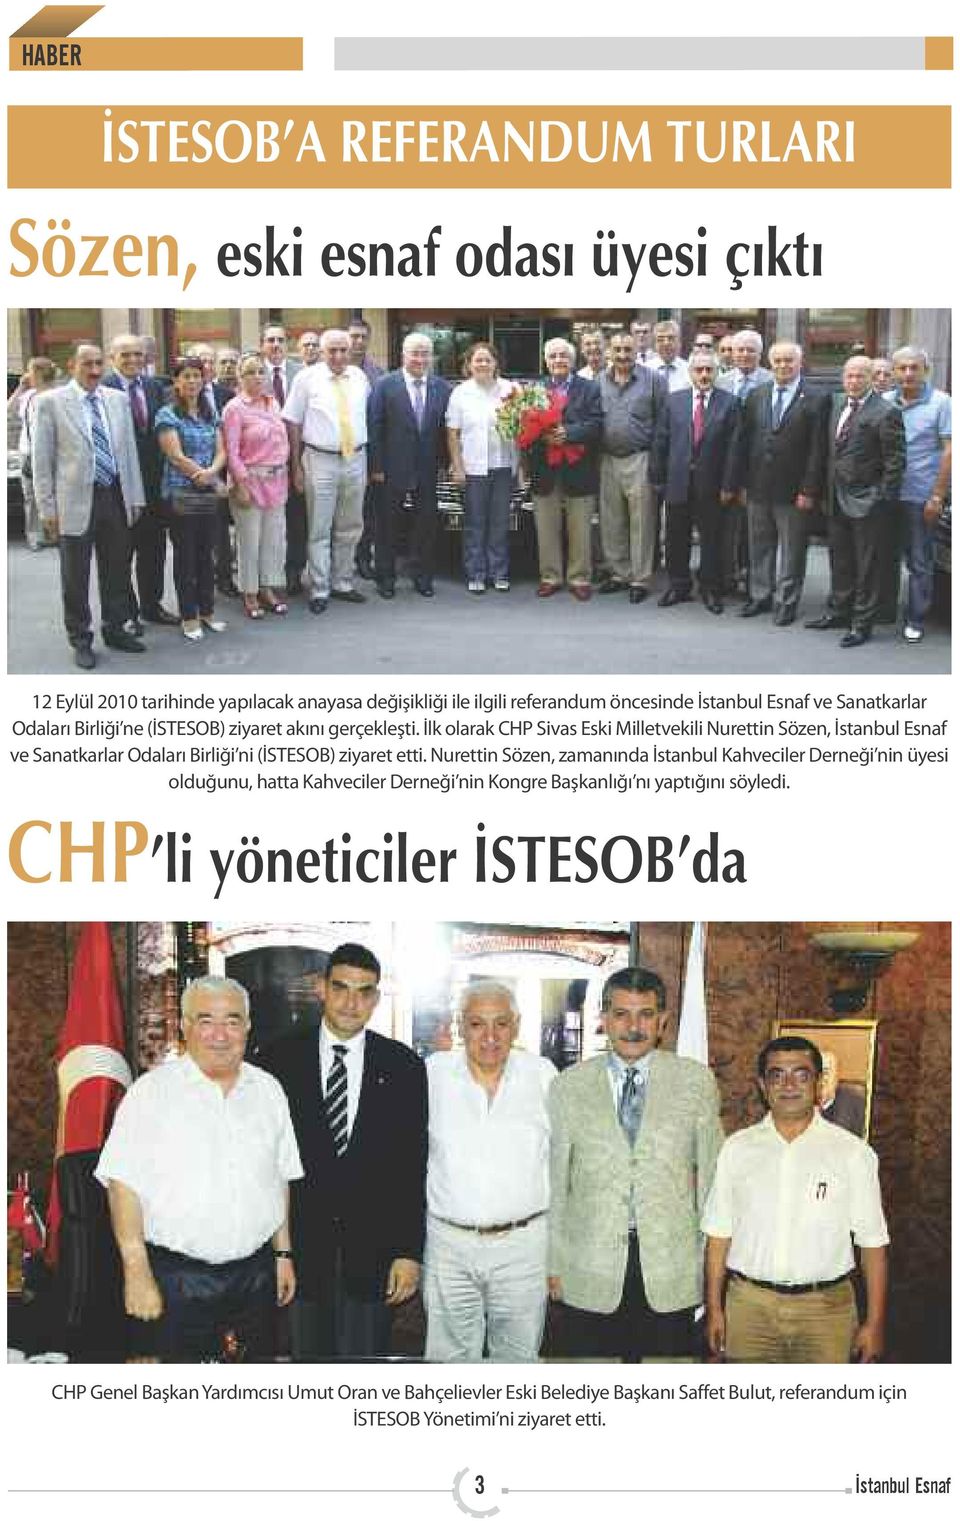 İlk olarak CHP Sivas Eski Milletvekili Nurettin Sözen, İstanbul Esnaf ve Sanatkarlar Odaları Birliği ni (İSTESOB) ziyaret etti.